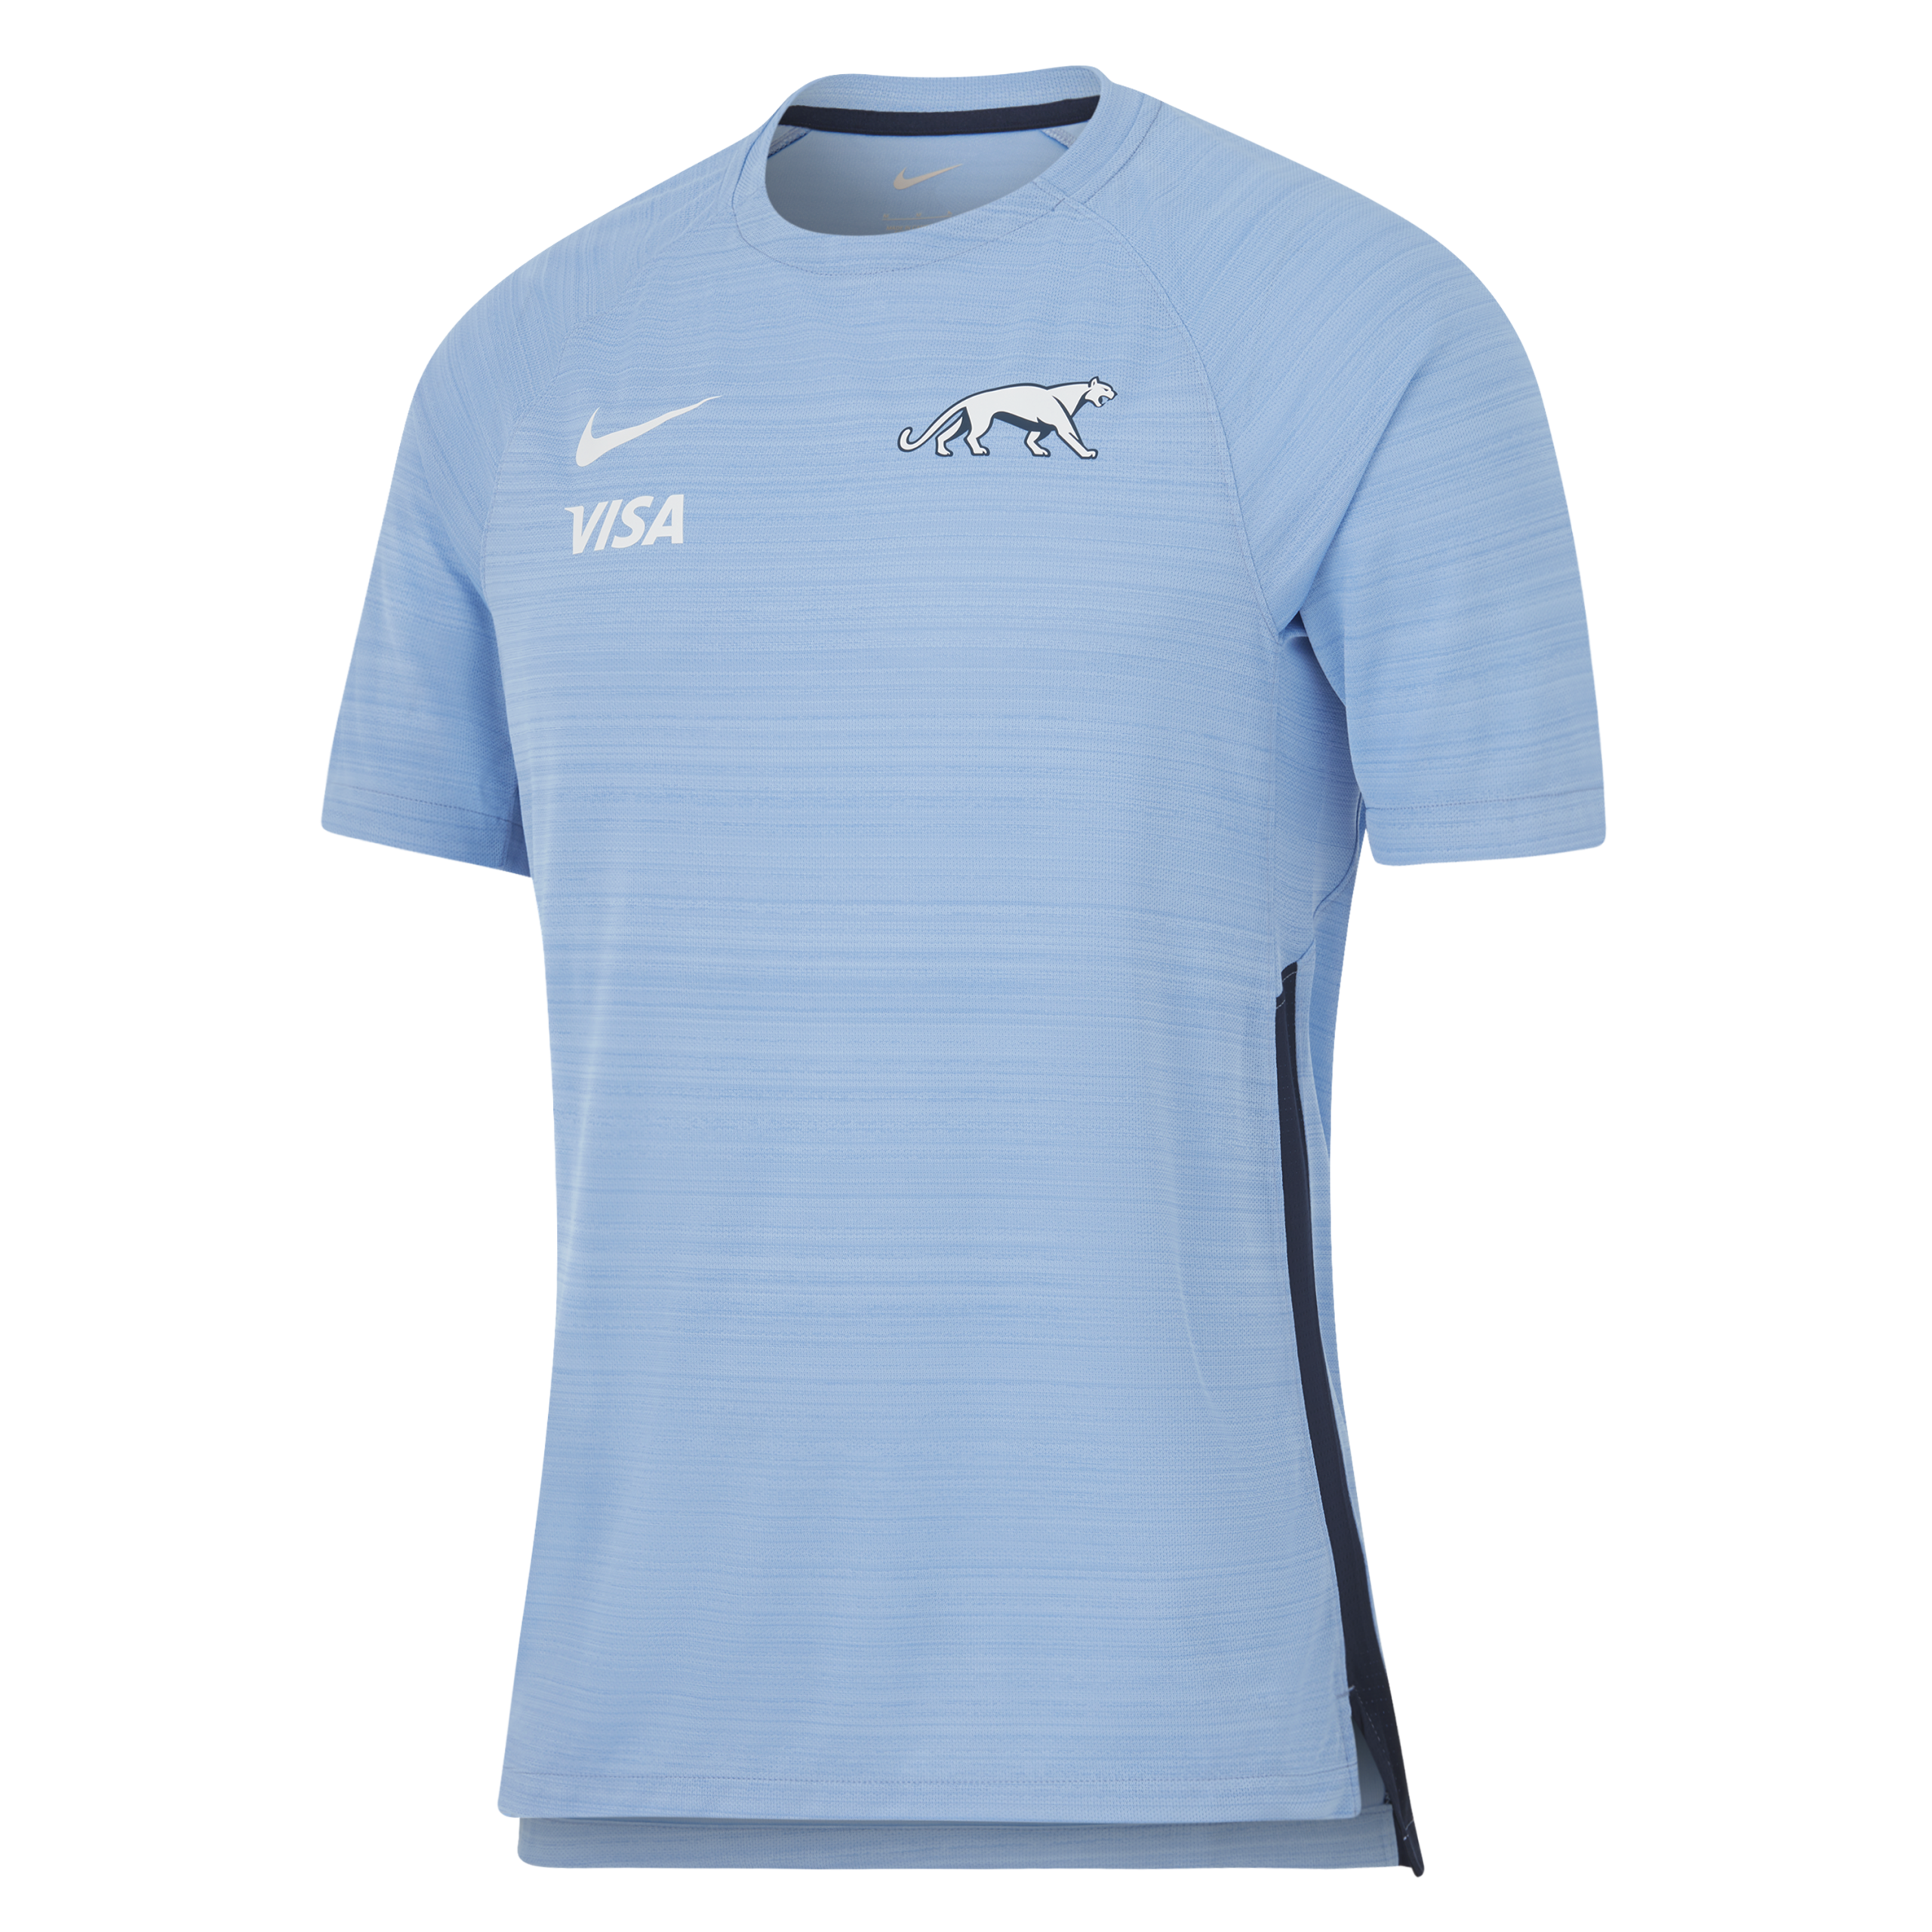 Slim Fit Athletic Long Sleeve Top - Ocean Blue – Aura Athletics